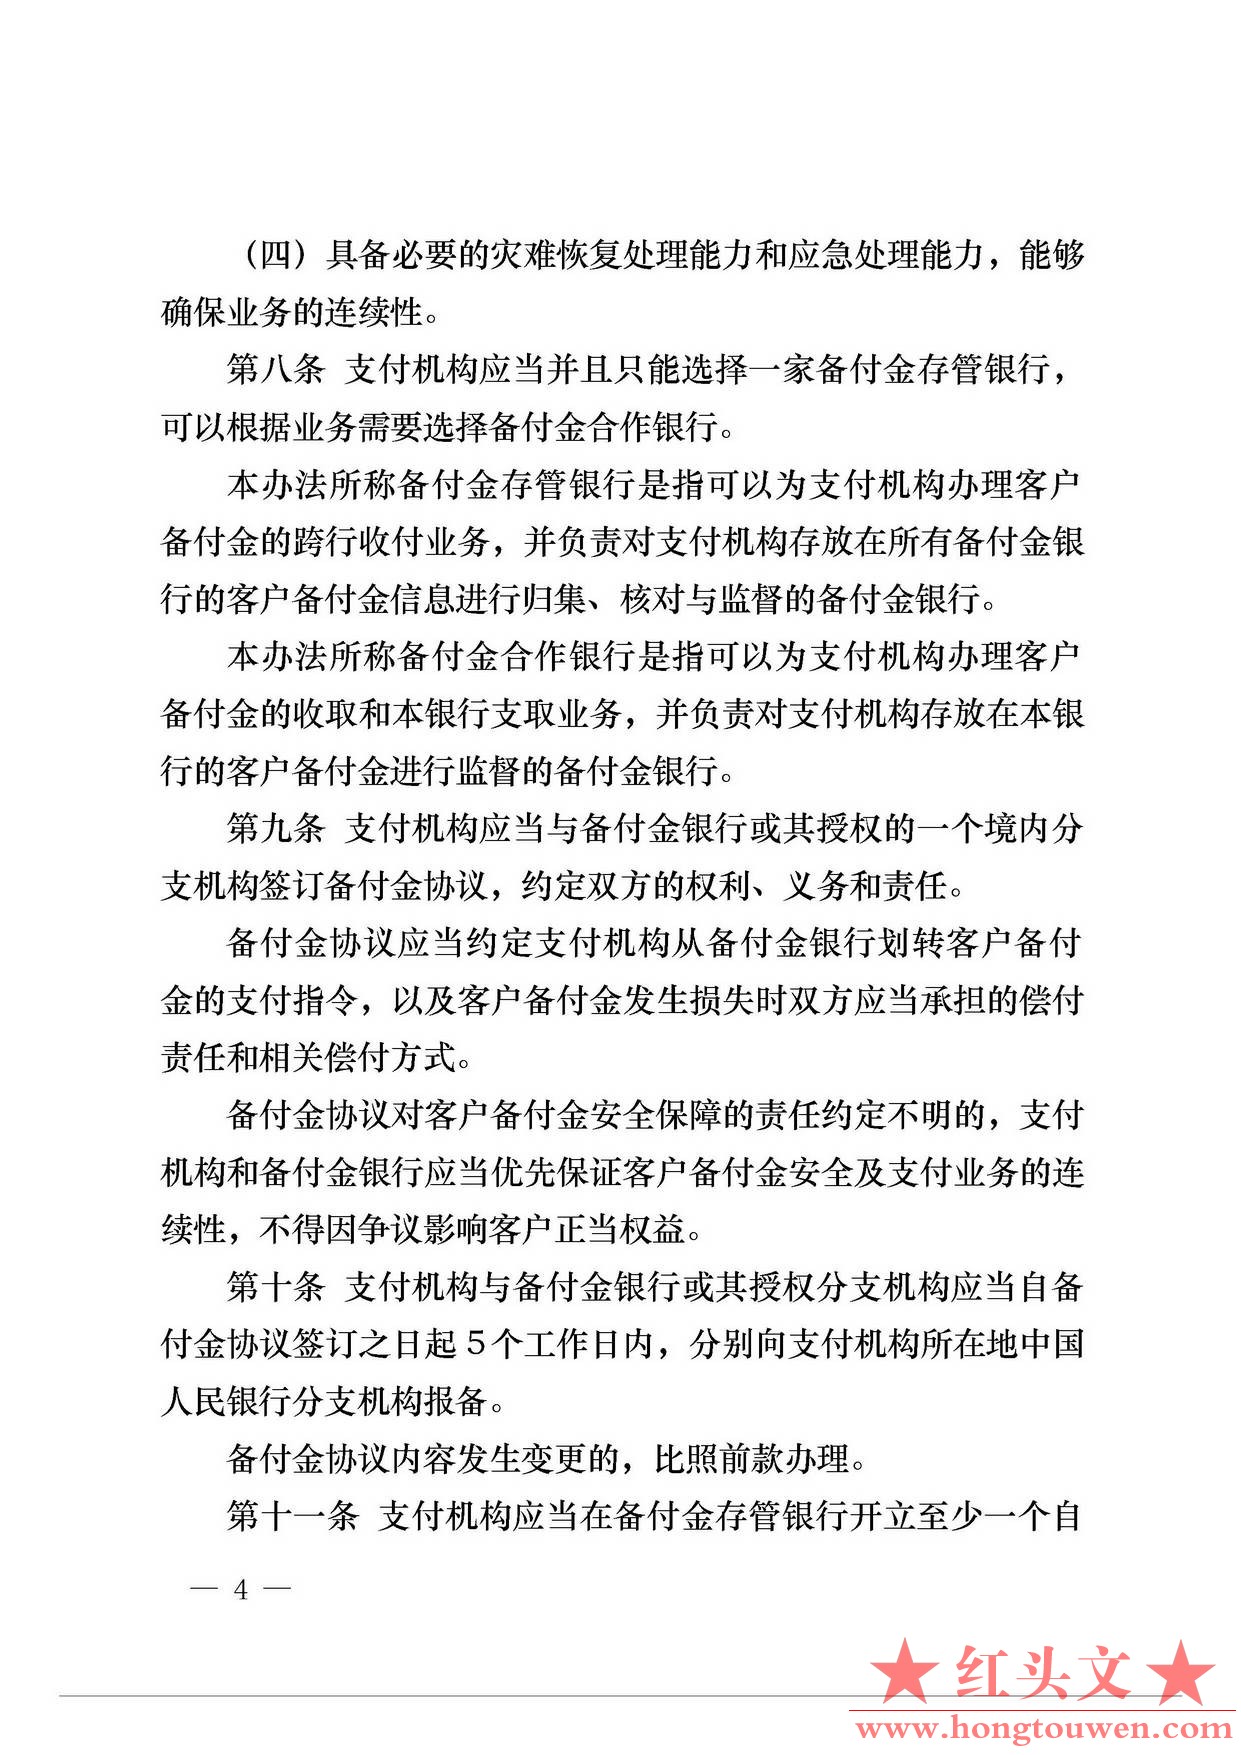 中国人民银行公告[2013]6号-《支付机构客户备付金存管办法》_页面_04.jpg.jpg